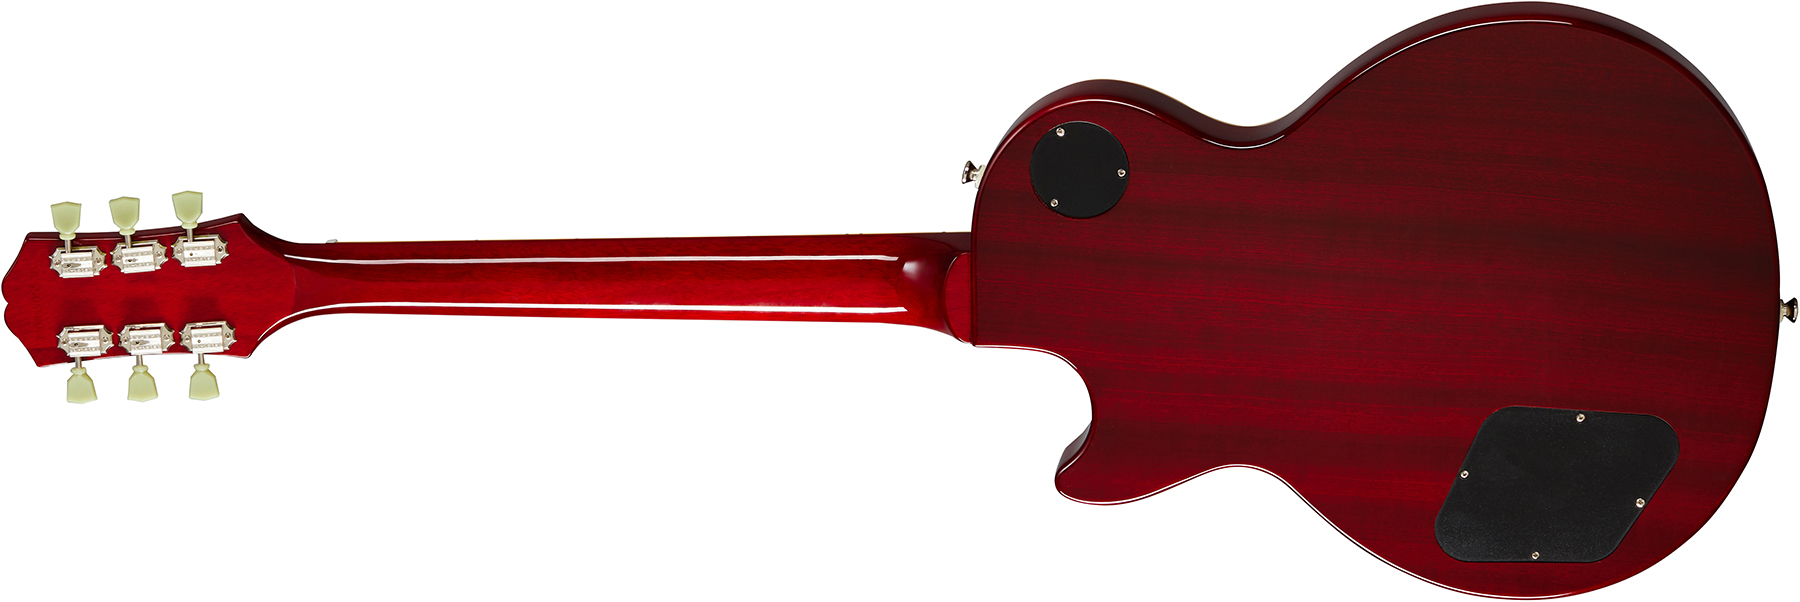 Epiphone Les Paul Standard 50s 2h Ht Rw - Heritage Cherry Sunburst - Guitare Électrique Single Cut - Variation 1